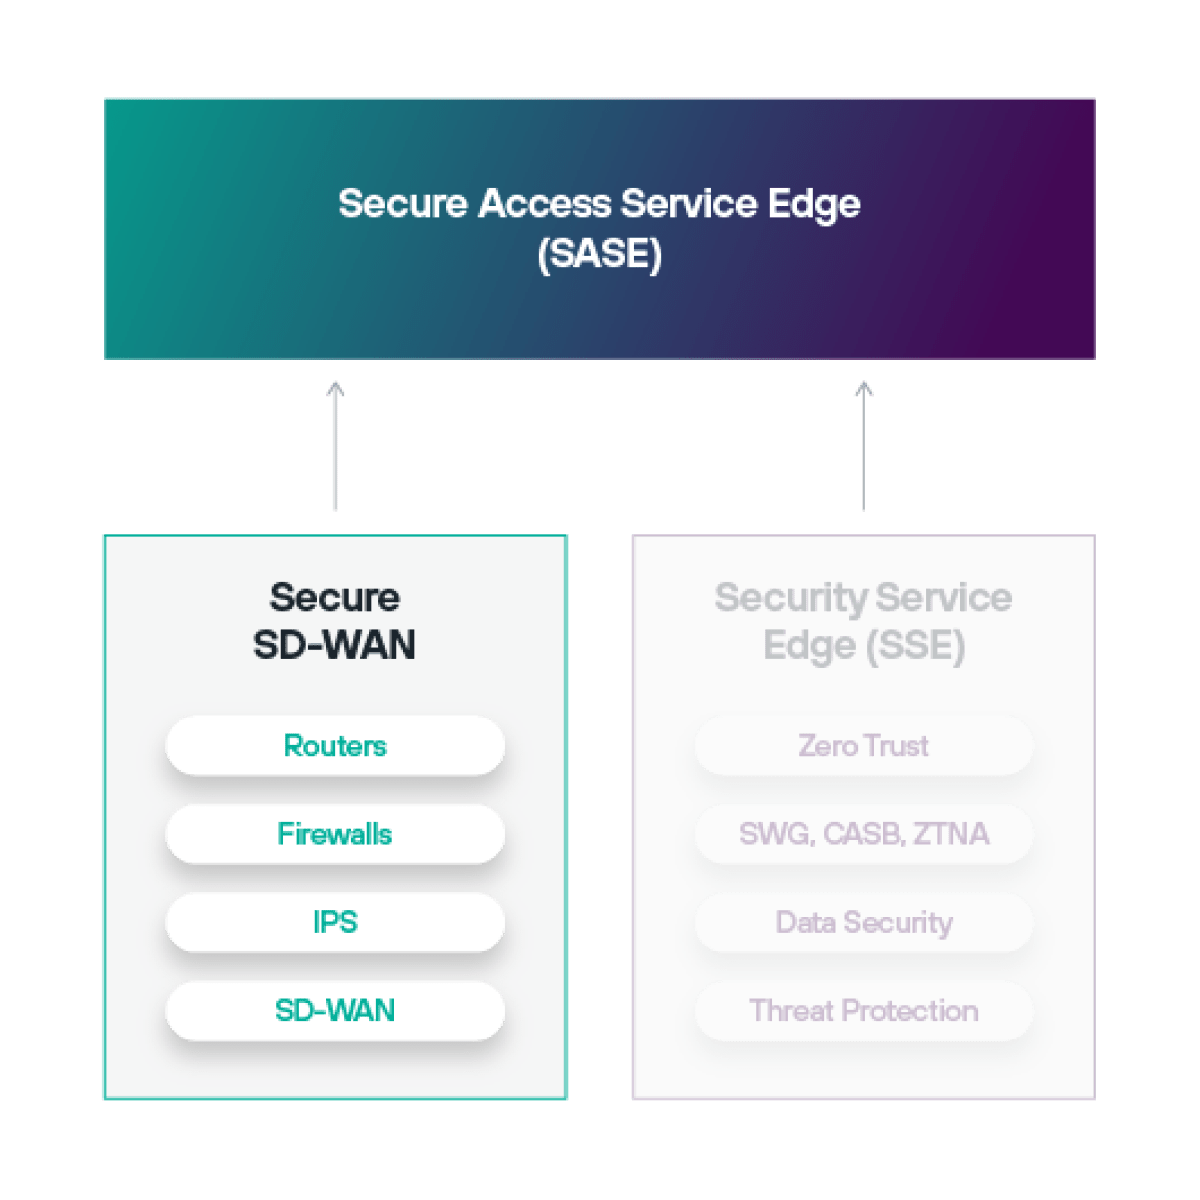 软件定义广域网 (SD-WAN) 是安全访问服务边缘 (SASE) 架构的一部分。